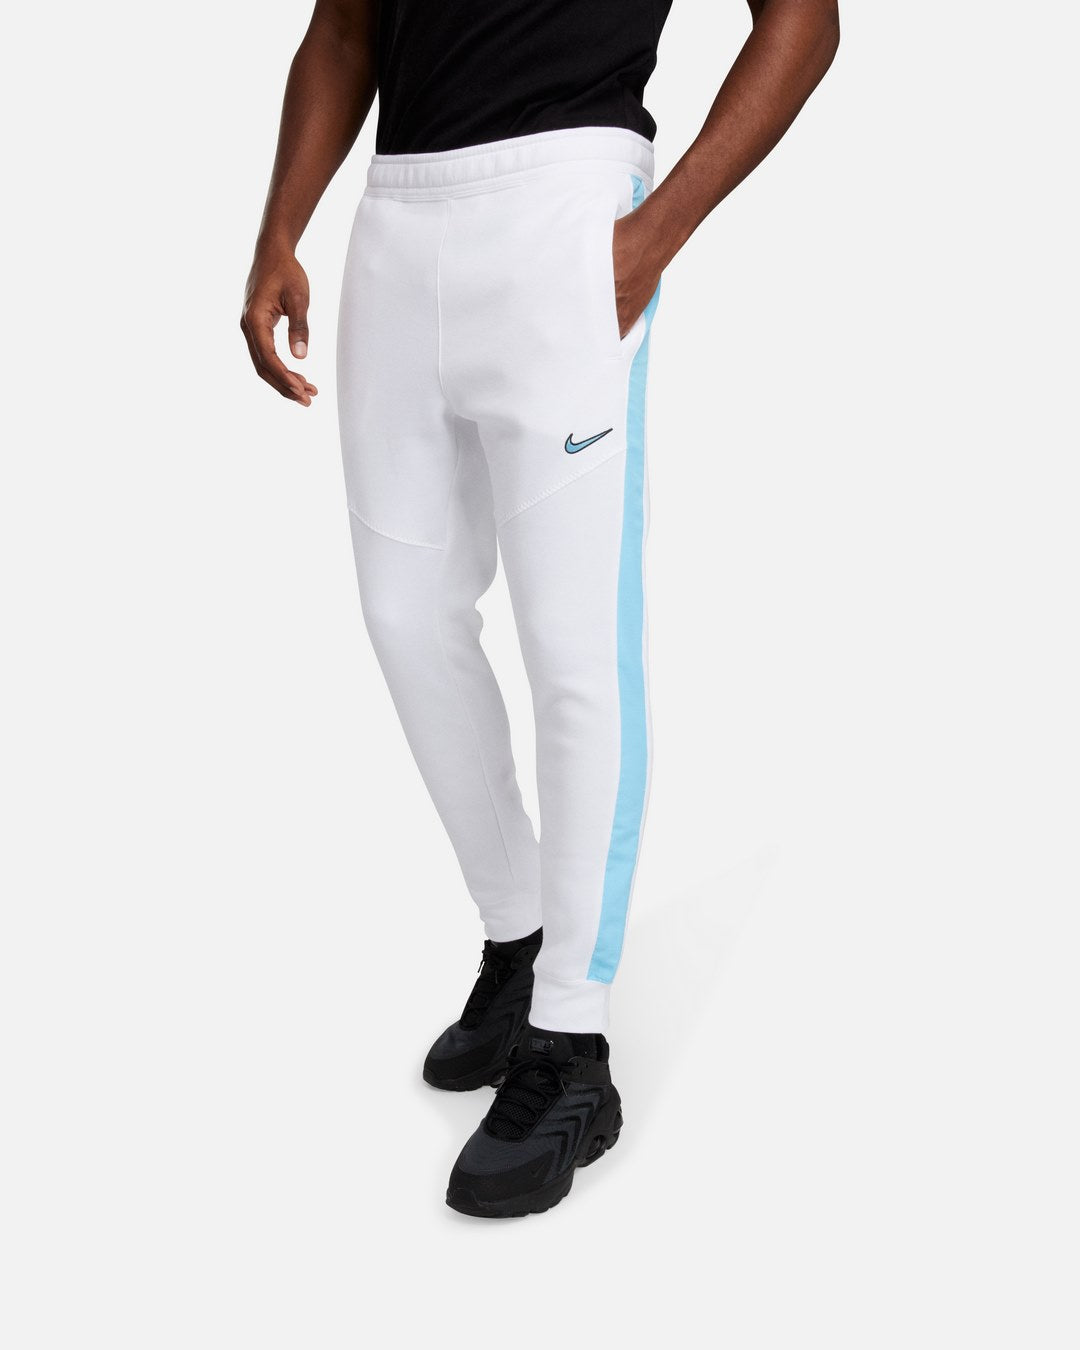 Pantalon Nike Sportswear - Blanc/Bleu